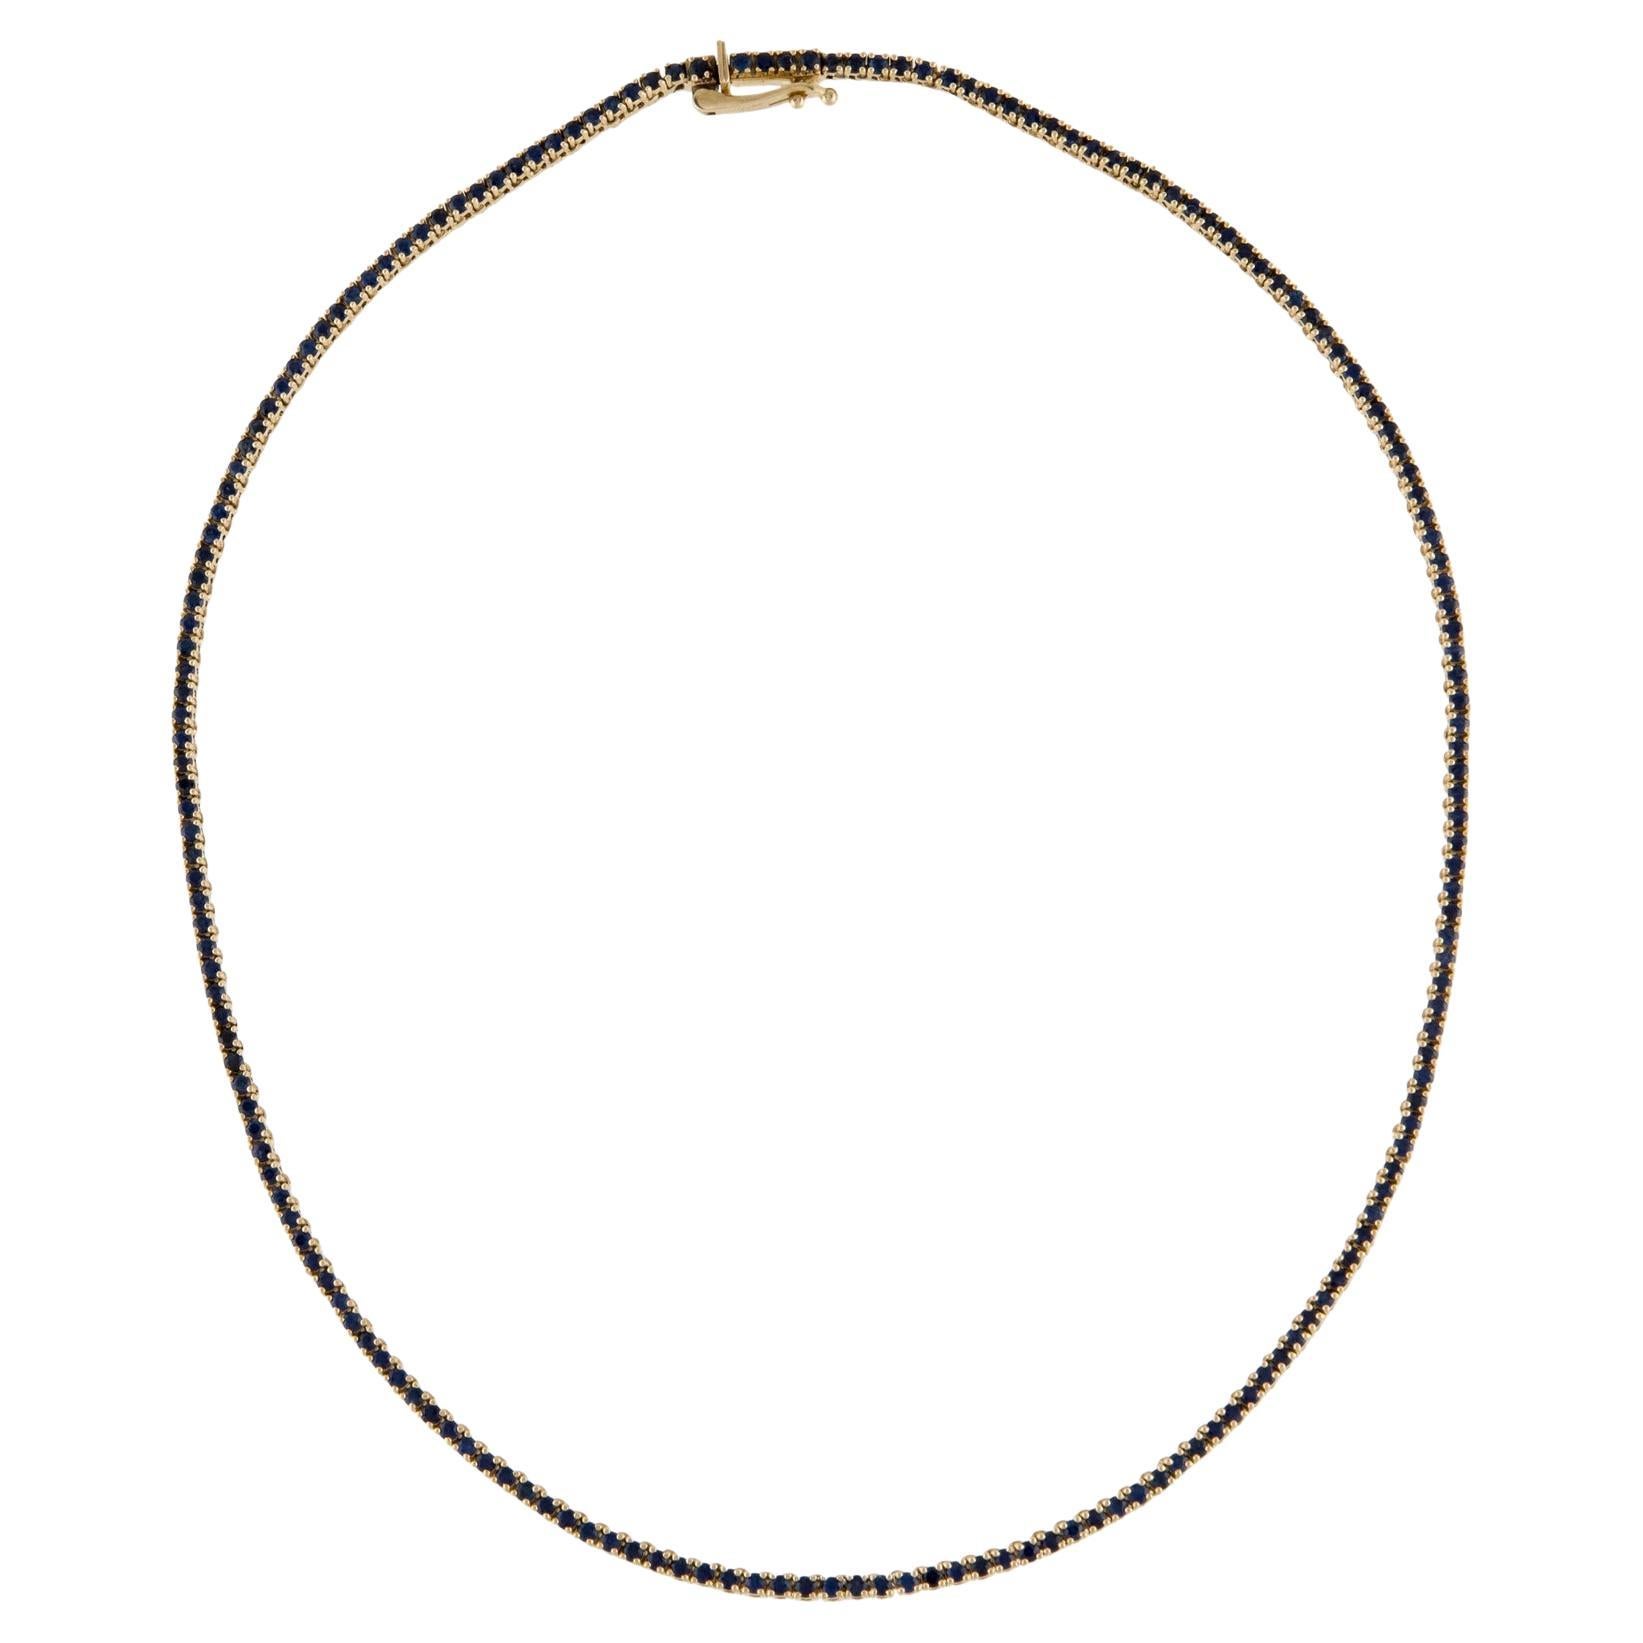 14K 6,47ctw Saphir Halsband Halskette - Exquisite Edelstein Aussage Stück